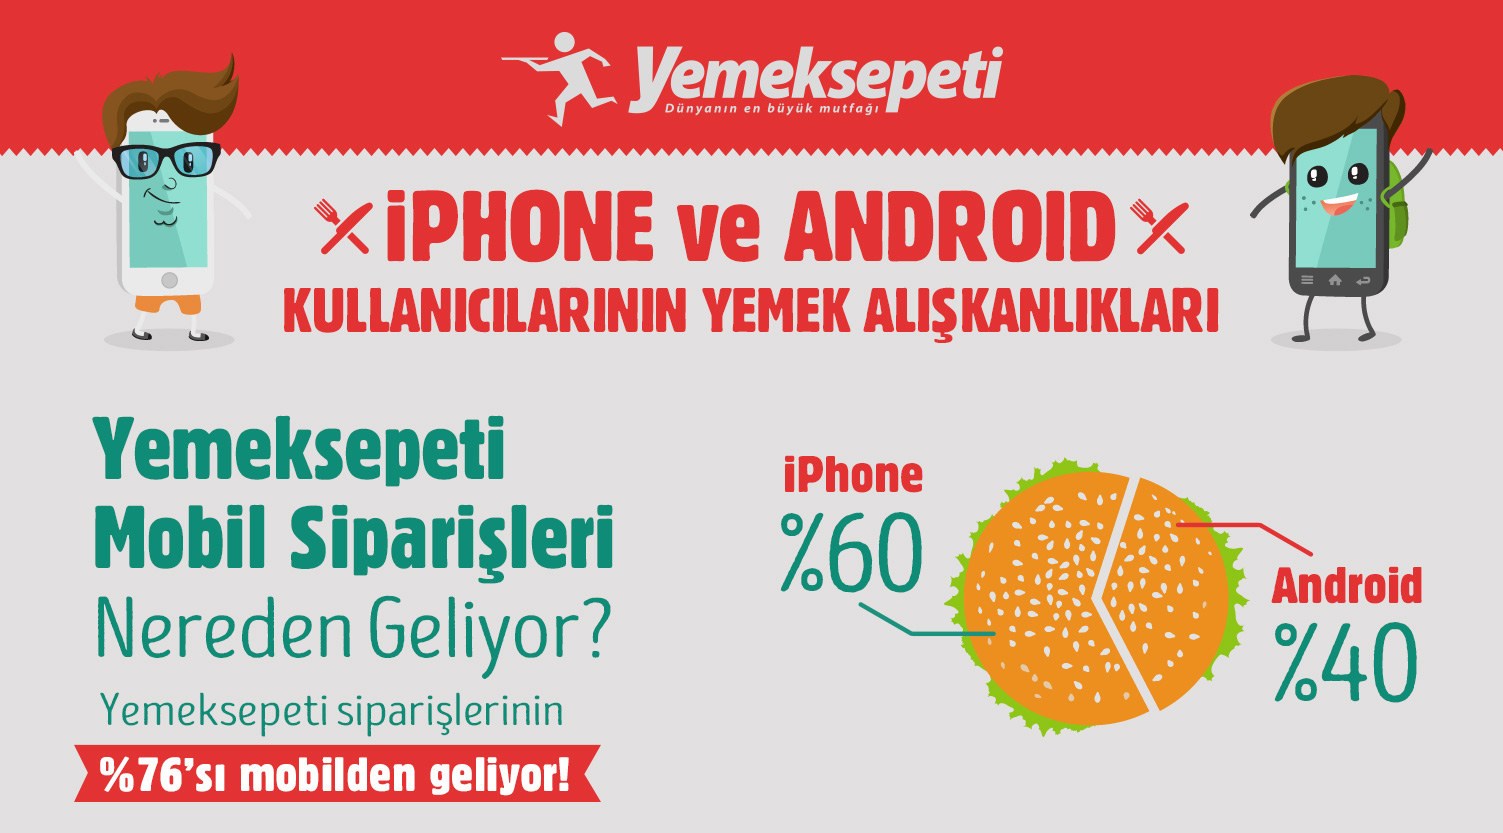 Türkiye'deki iPhone kullanıcıları burger, Android kullanıcıları da pizza seviyor